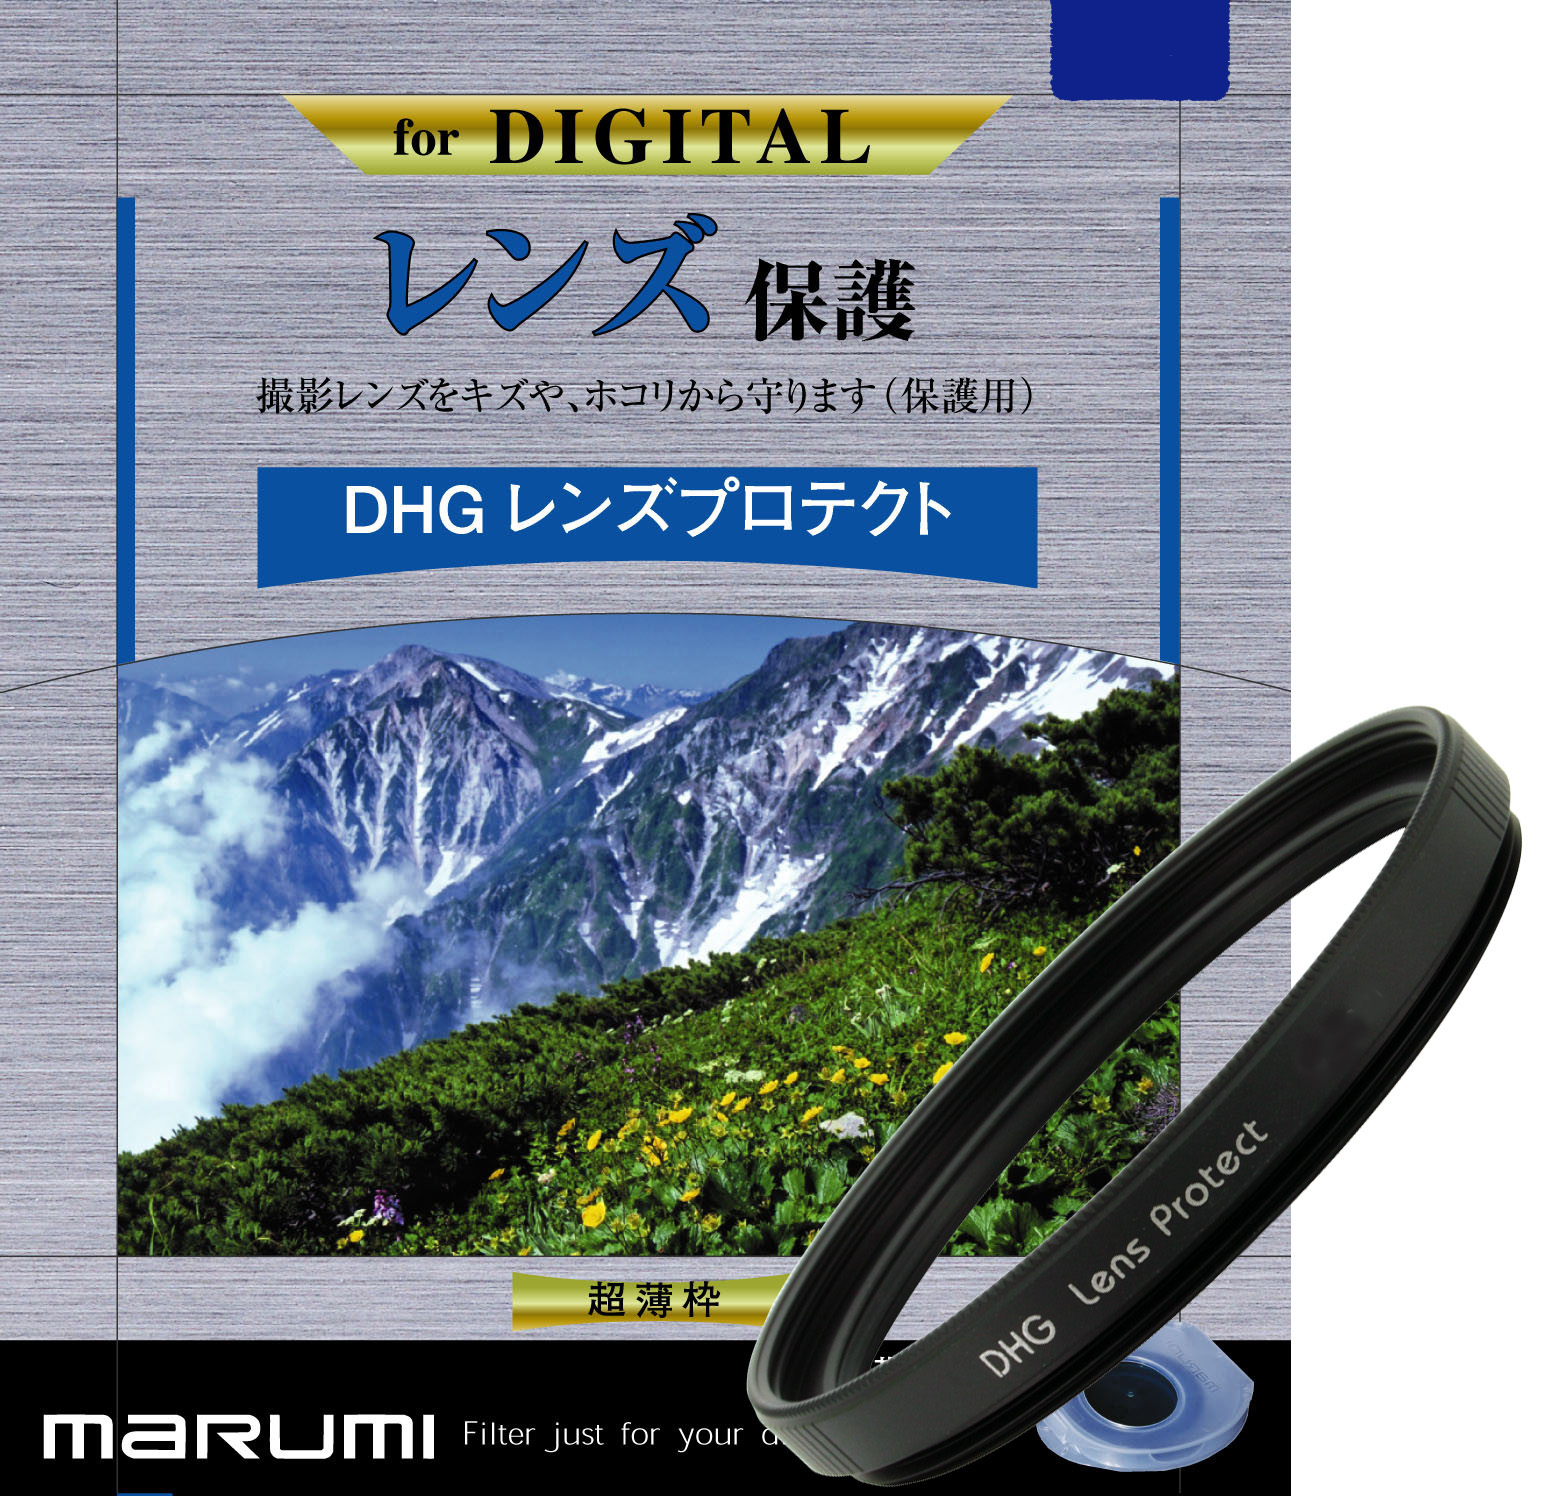 マルミ  DHG レンズプロテクト 82mm [プロテクター] MARUMI